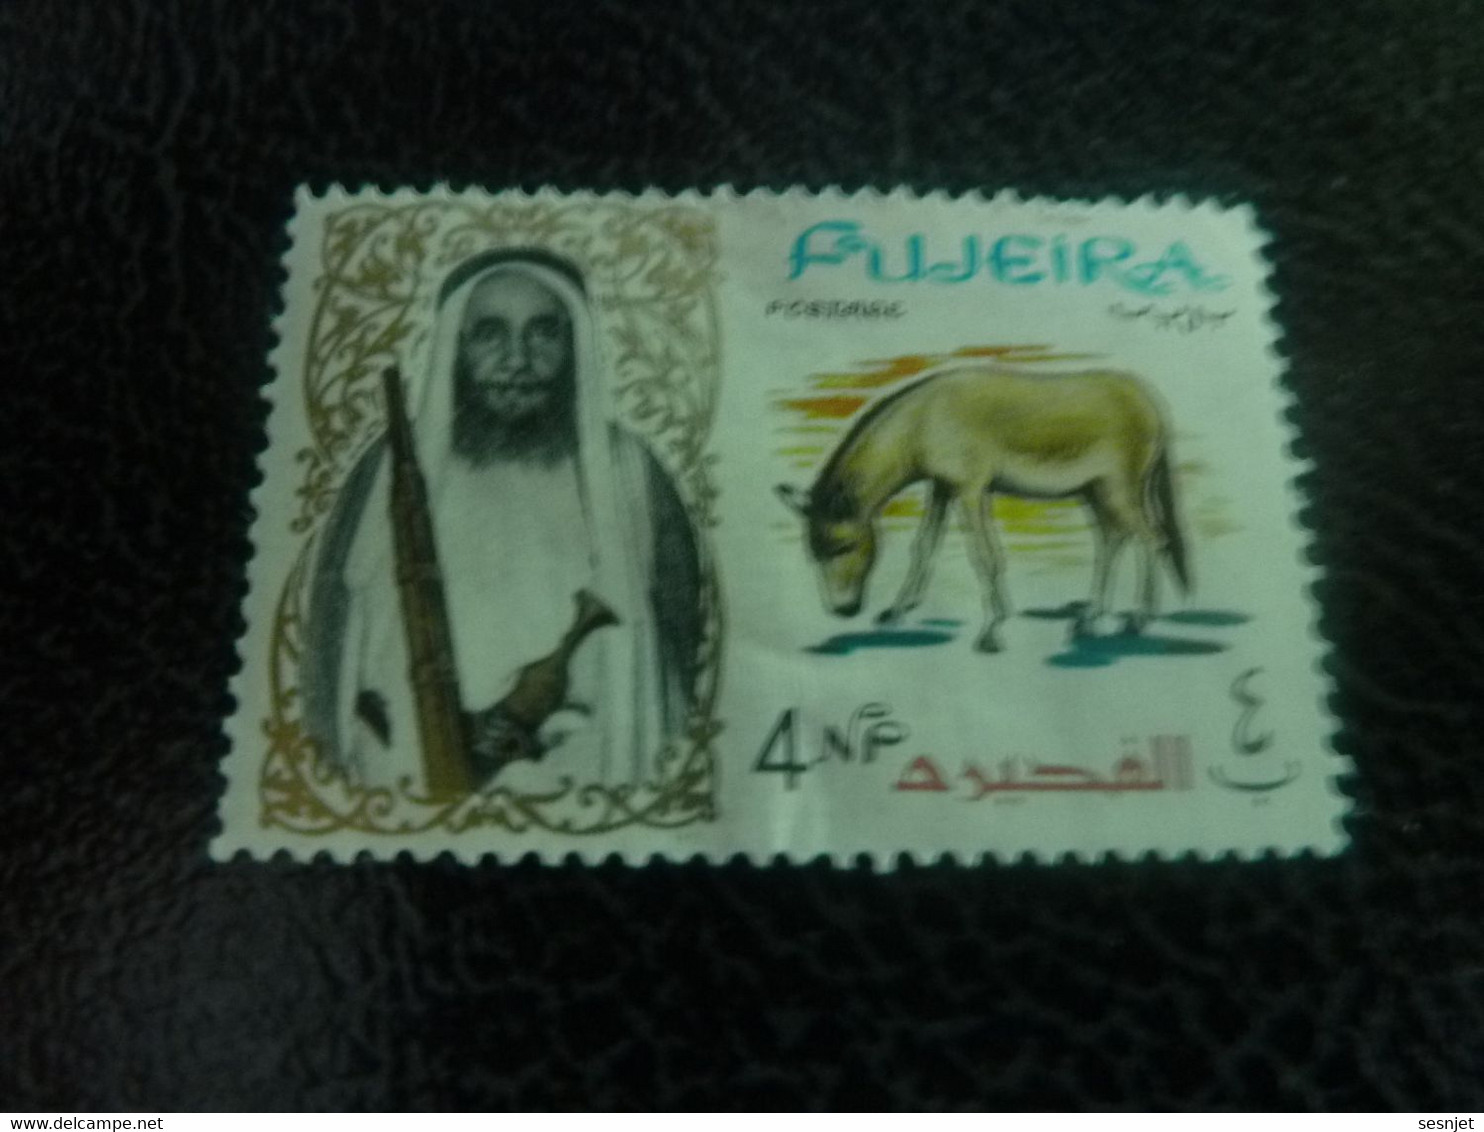 Fujeira - Sultan - Mule - Val 4 Np - Postage - Multicolore - Non Oblitéré - Année 1965 - - Burros Y Asnos